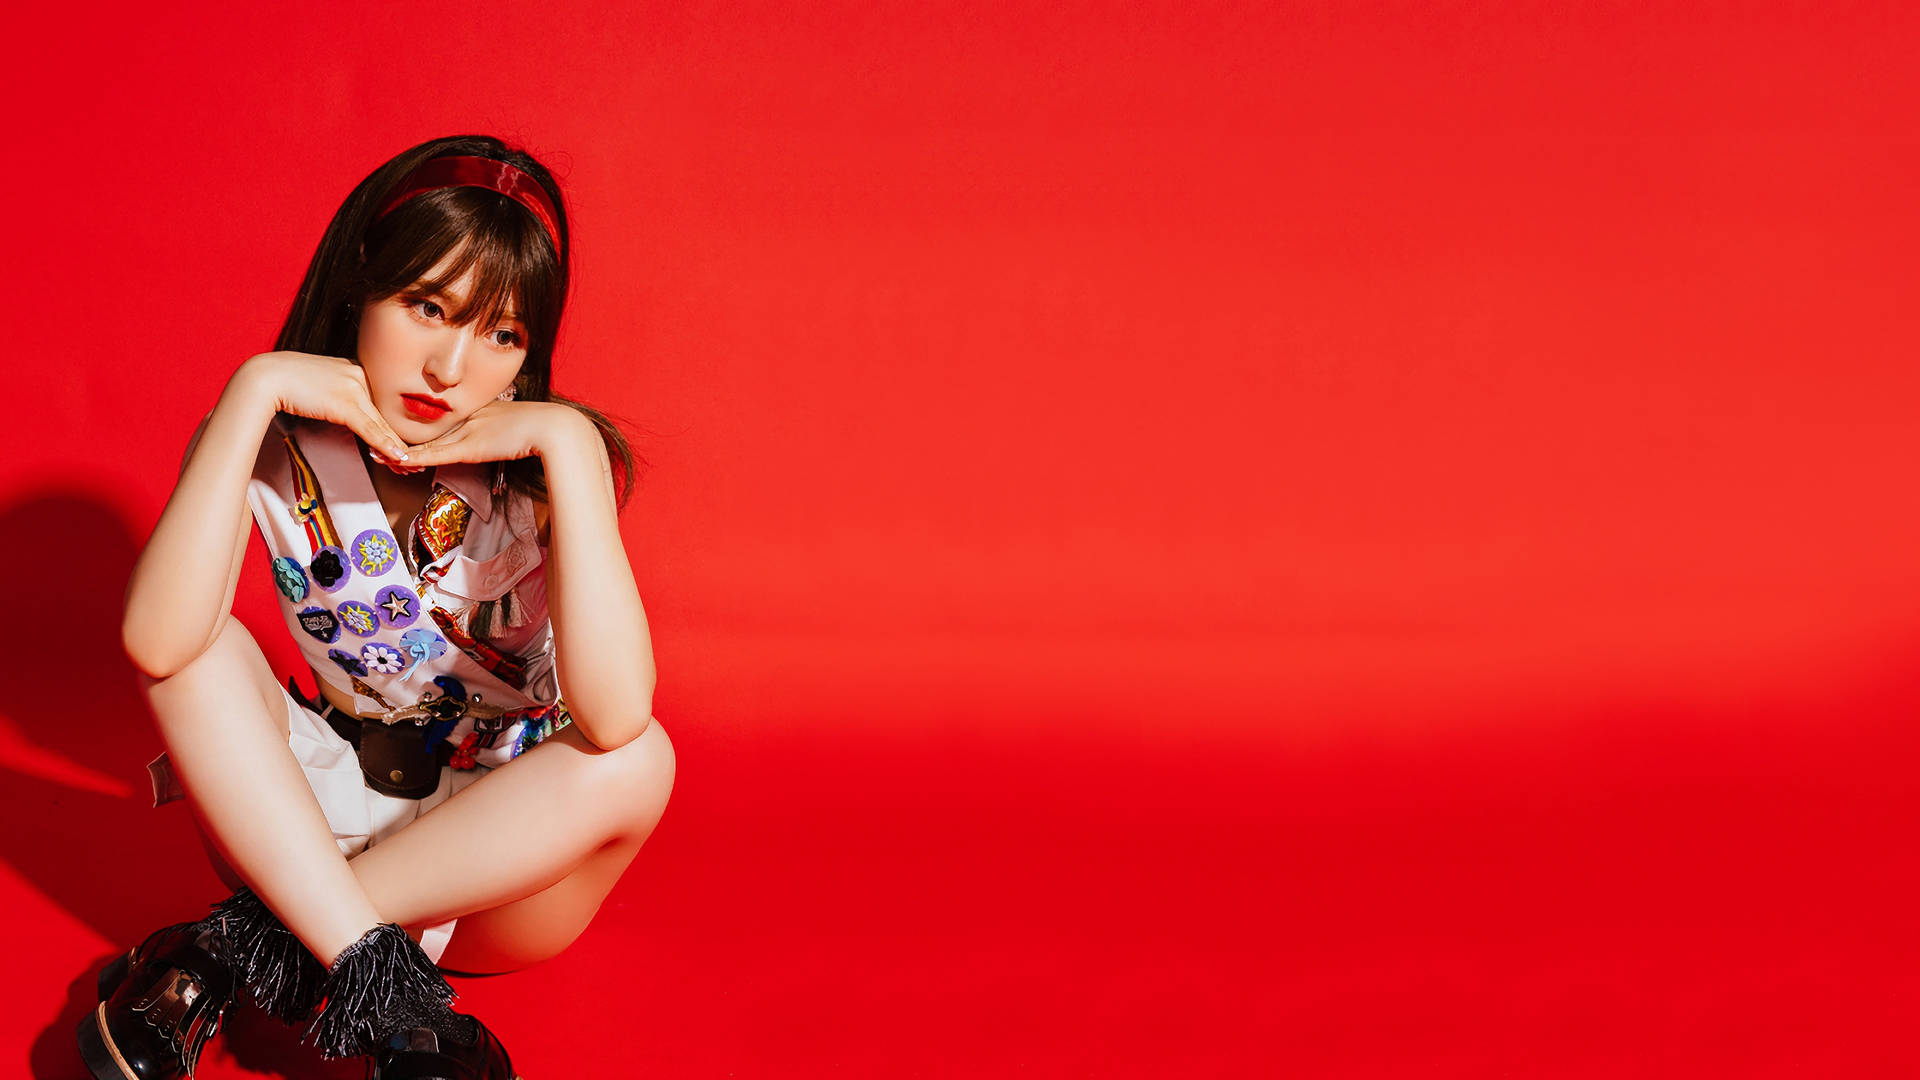 Red Velvet Girl Wendy Background